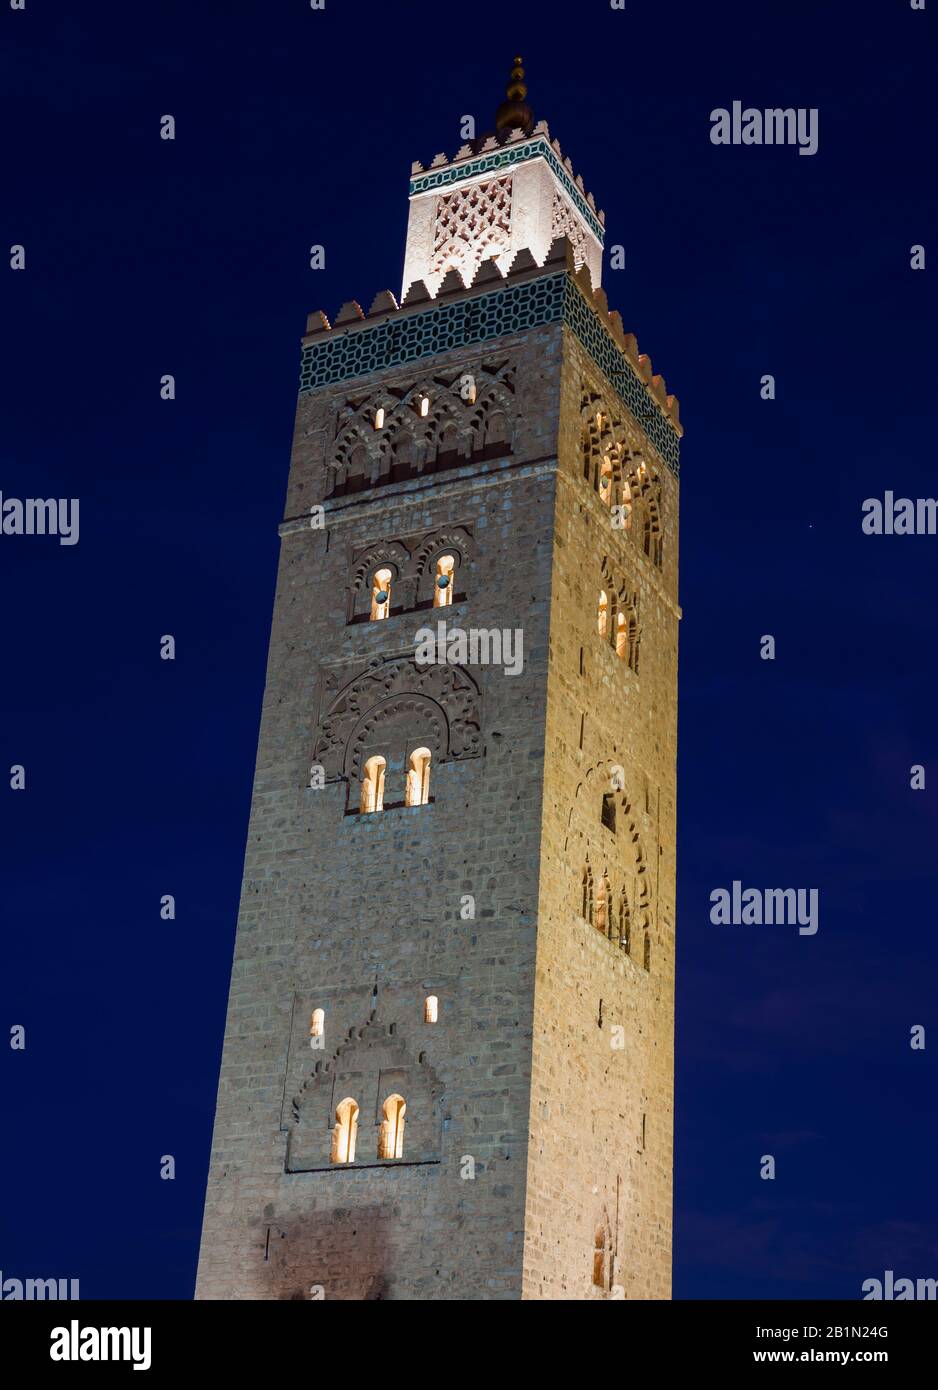 Minaret de la mosquée Koutoubia, place Djema el-Fna. Marrakech, Maroc Banque D'Images